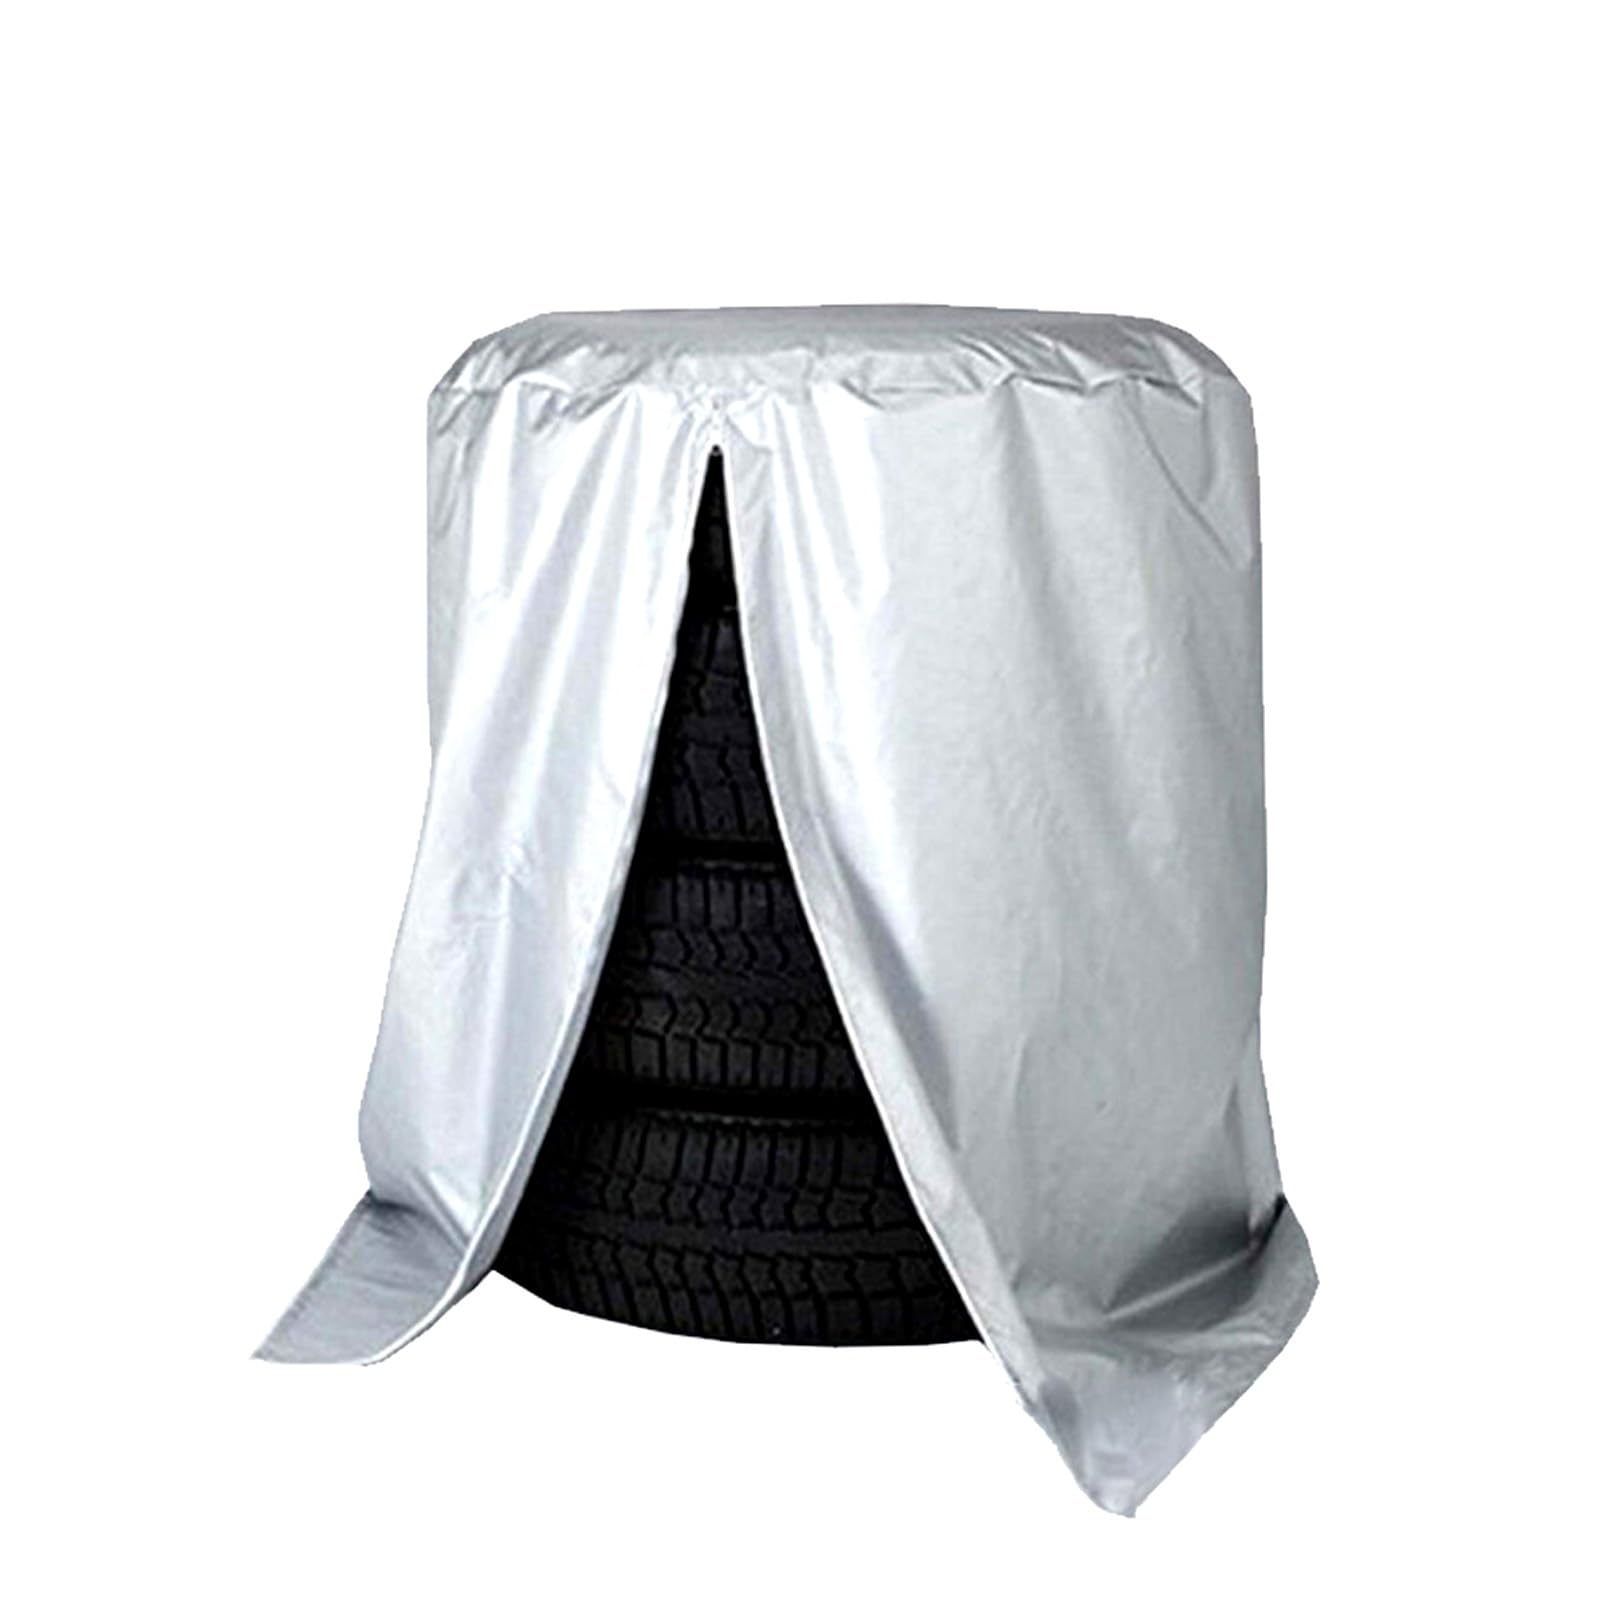 Universale Reifenabdeckung Reifen Schutzhülle Reifenhülle Radabdeckung Reifensack Reifentaschen Reifentaschen-Set Autoreifen(Silver,65x90cm) von MIAOMI